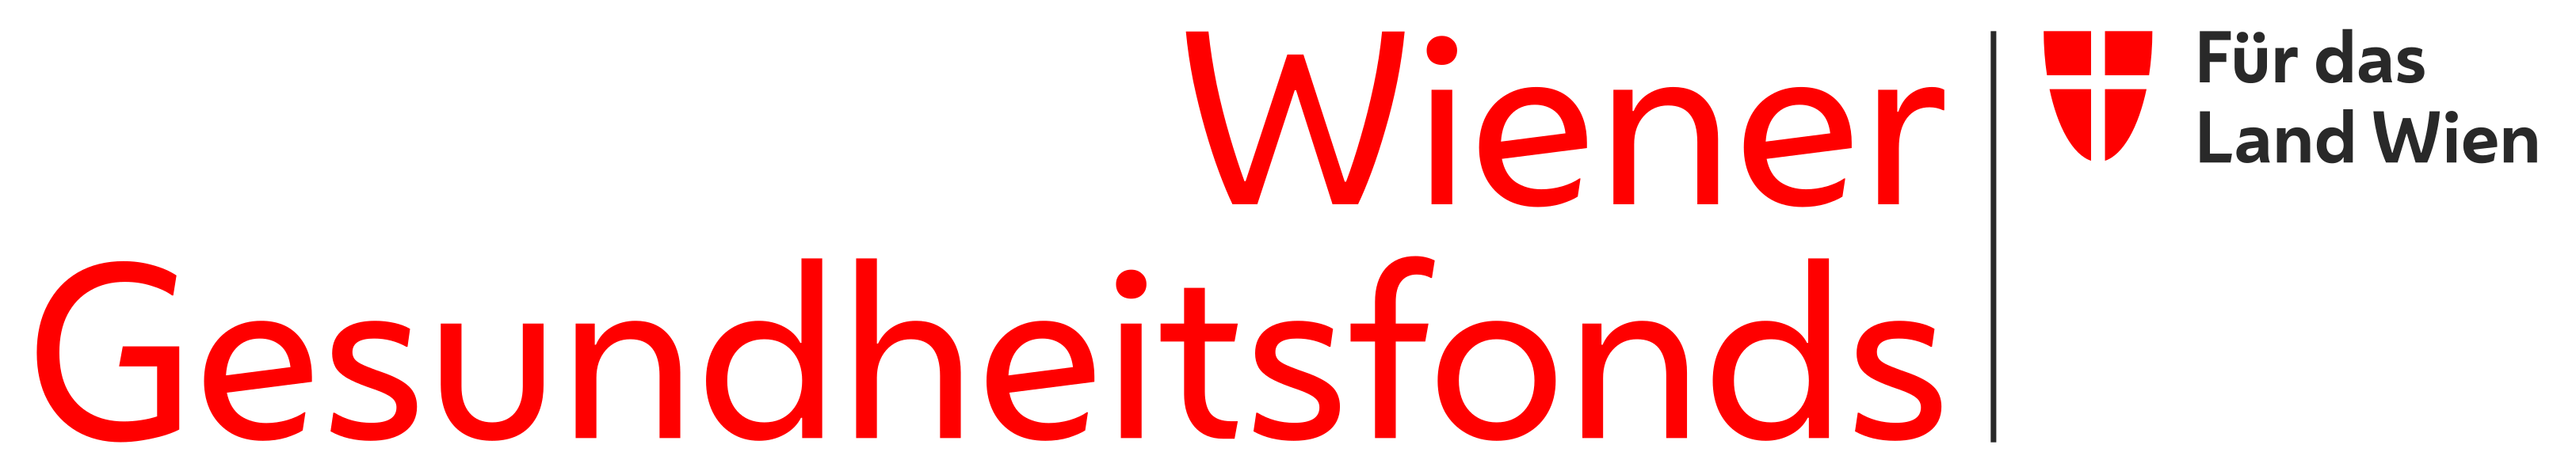 Das Bild zeigt das Logo des Wiener Gesundheitsfonds.